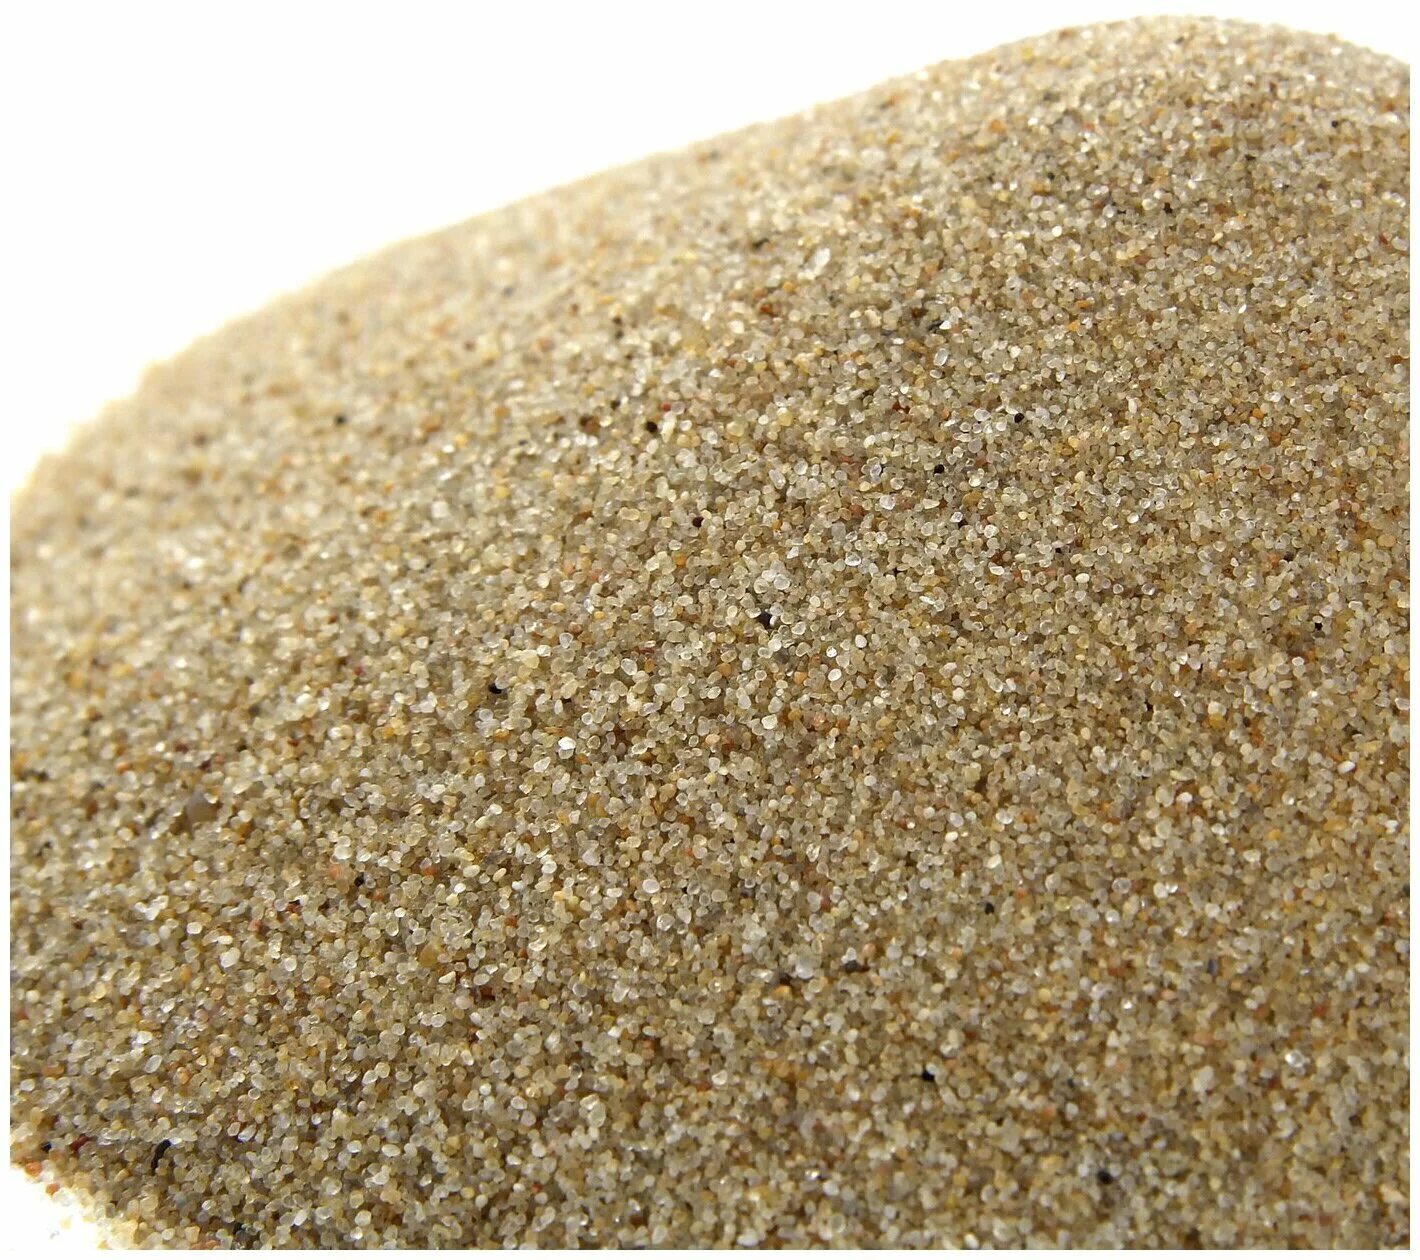 Песок кварцевый (фр.0-0,63мм). 'Песок кварцевый мелкий фр. 0.1-0.3 1к2о202. Песок кварцевый фр.0,2-0,63мм. Песок кварцевый SIKAQUARTZ Sand-08 мешок 25кг. Купить песок в московской области